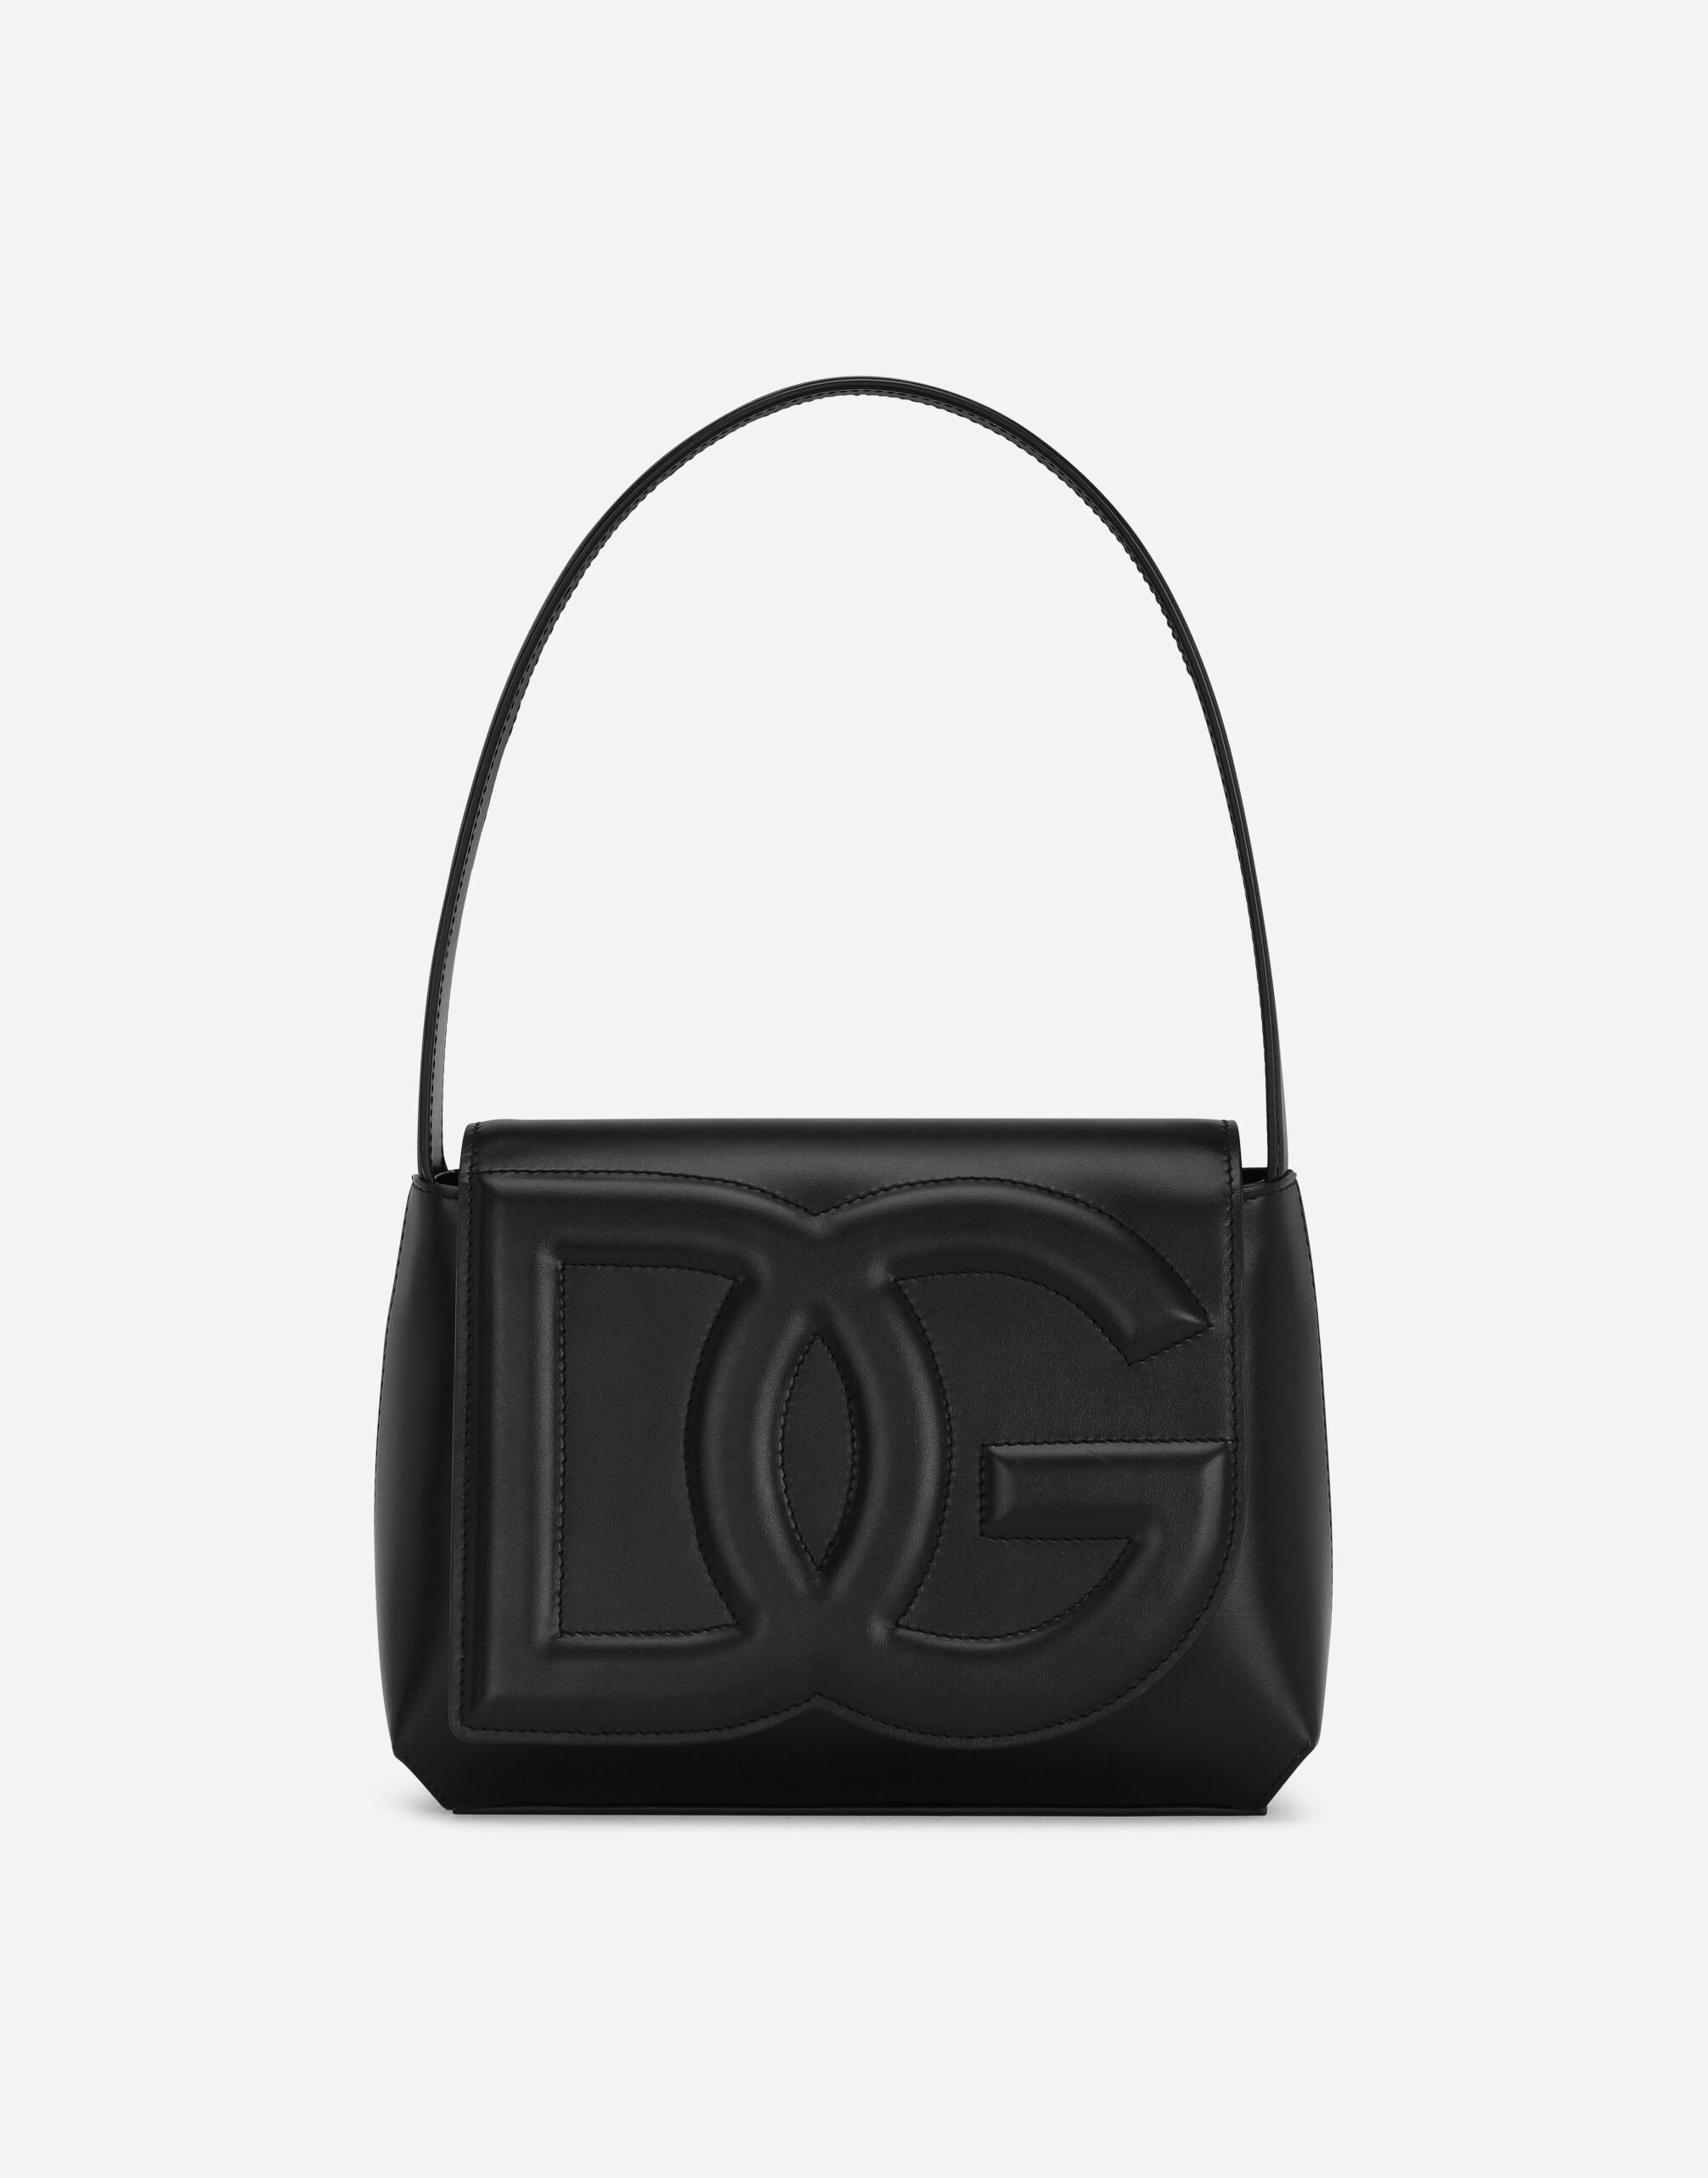 Dolce & Gabbana DG Logo Bag shoulder bag Black VG6186VN187